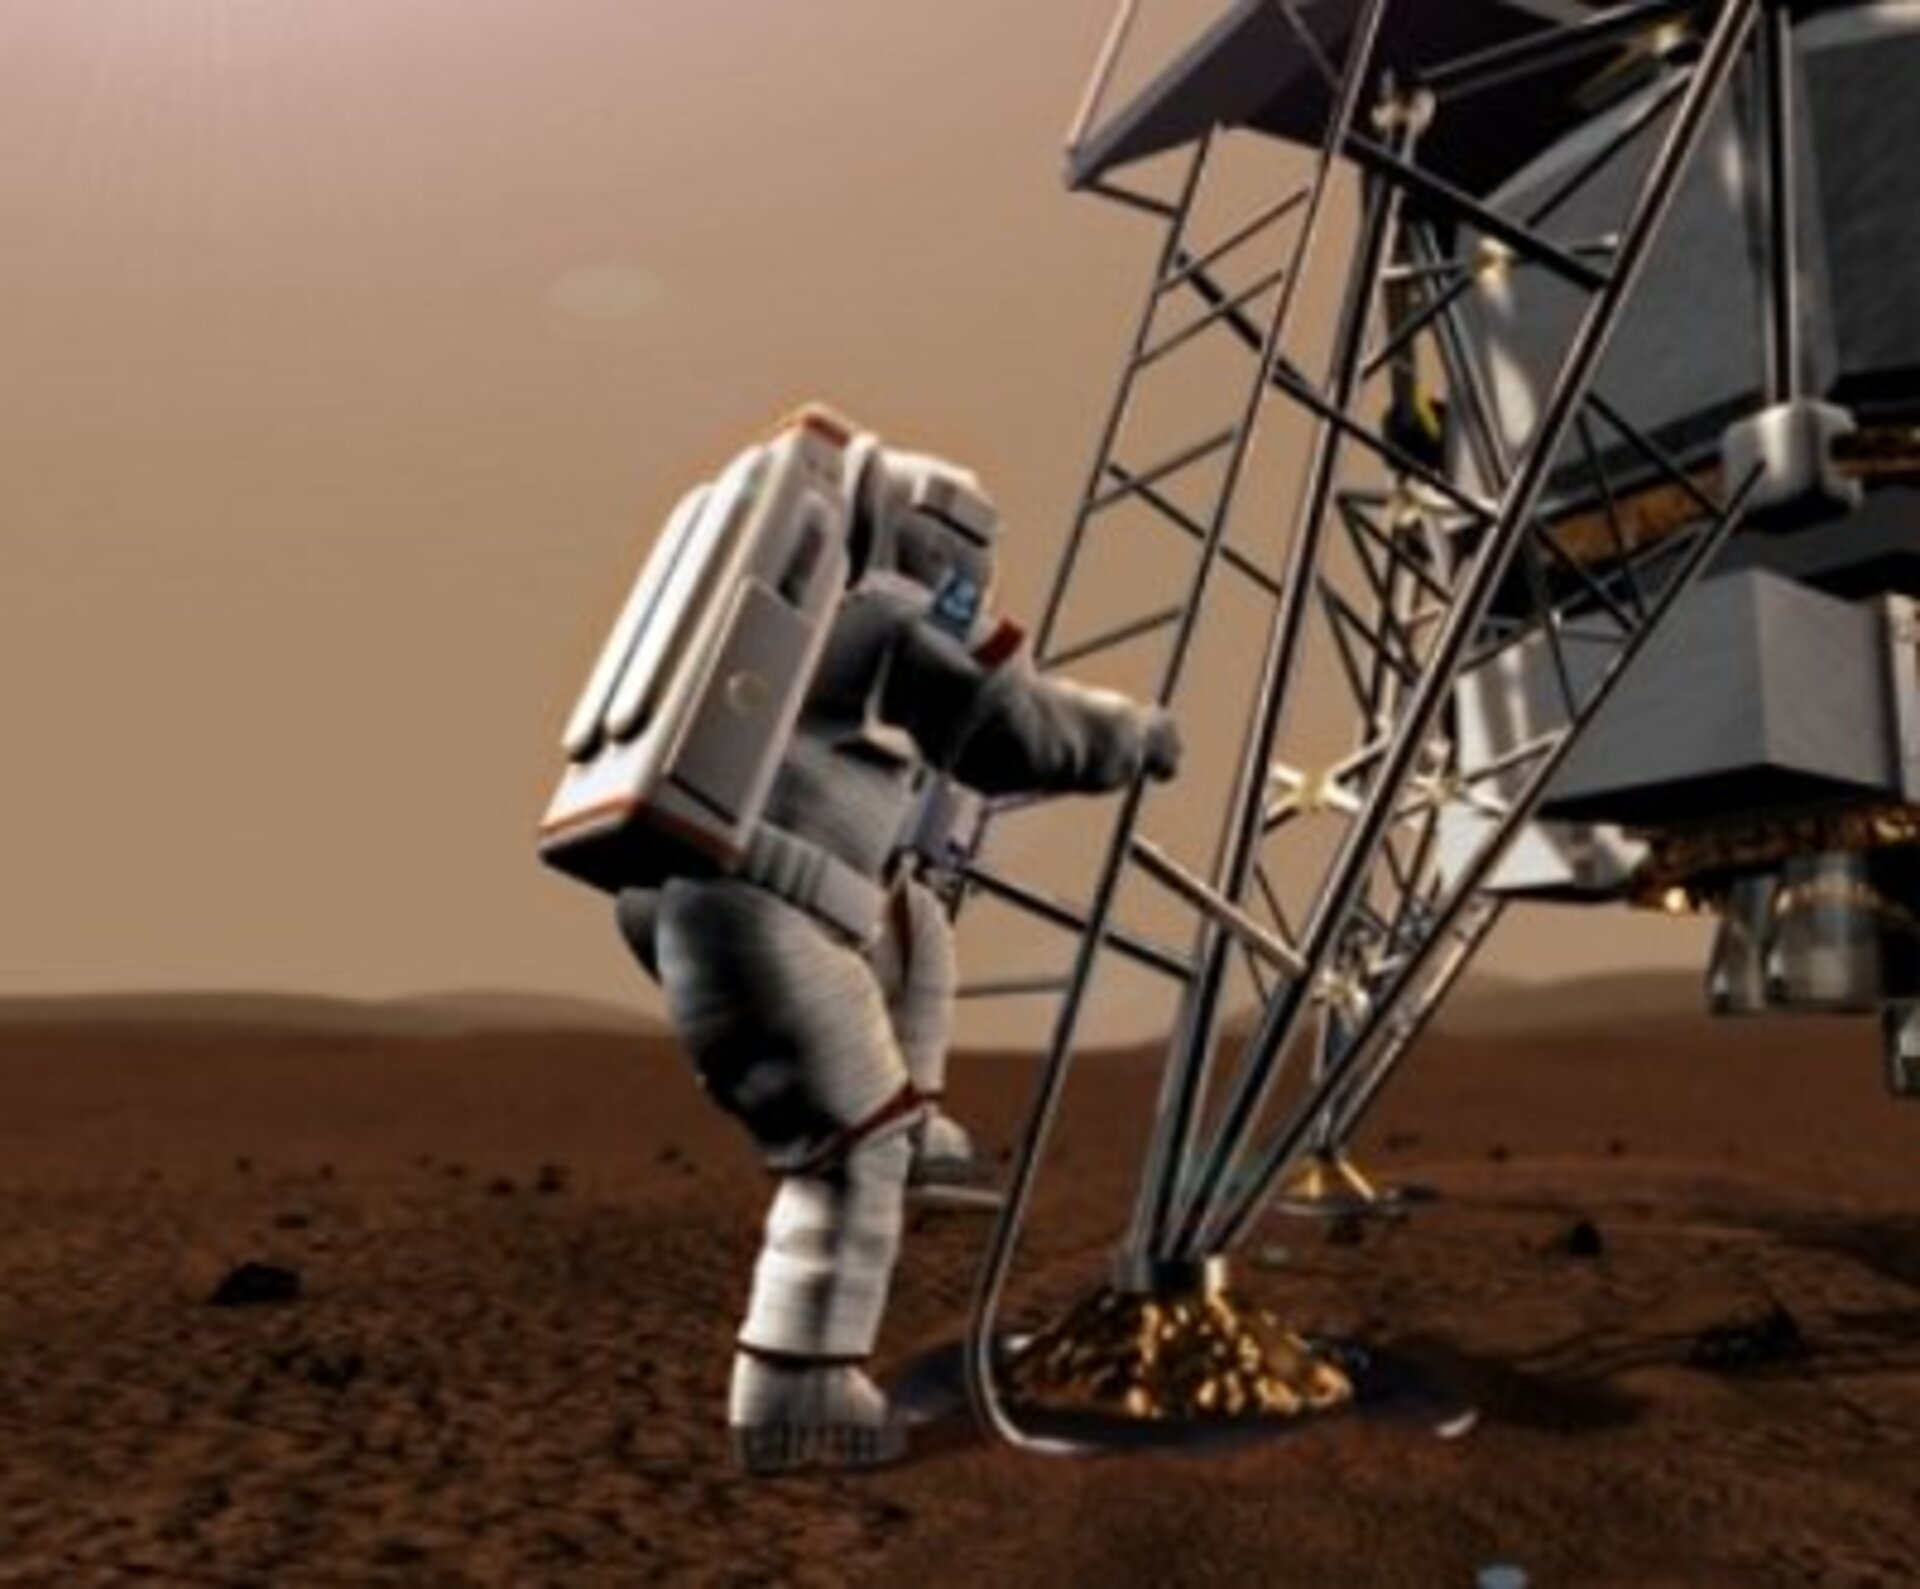 Forsøget vil indeholde en simuleret landing på Mars